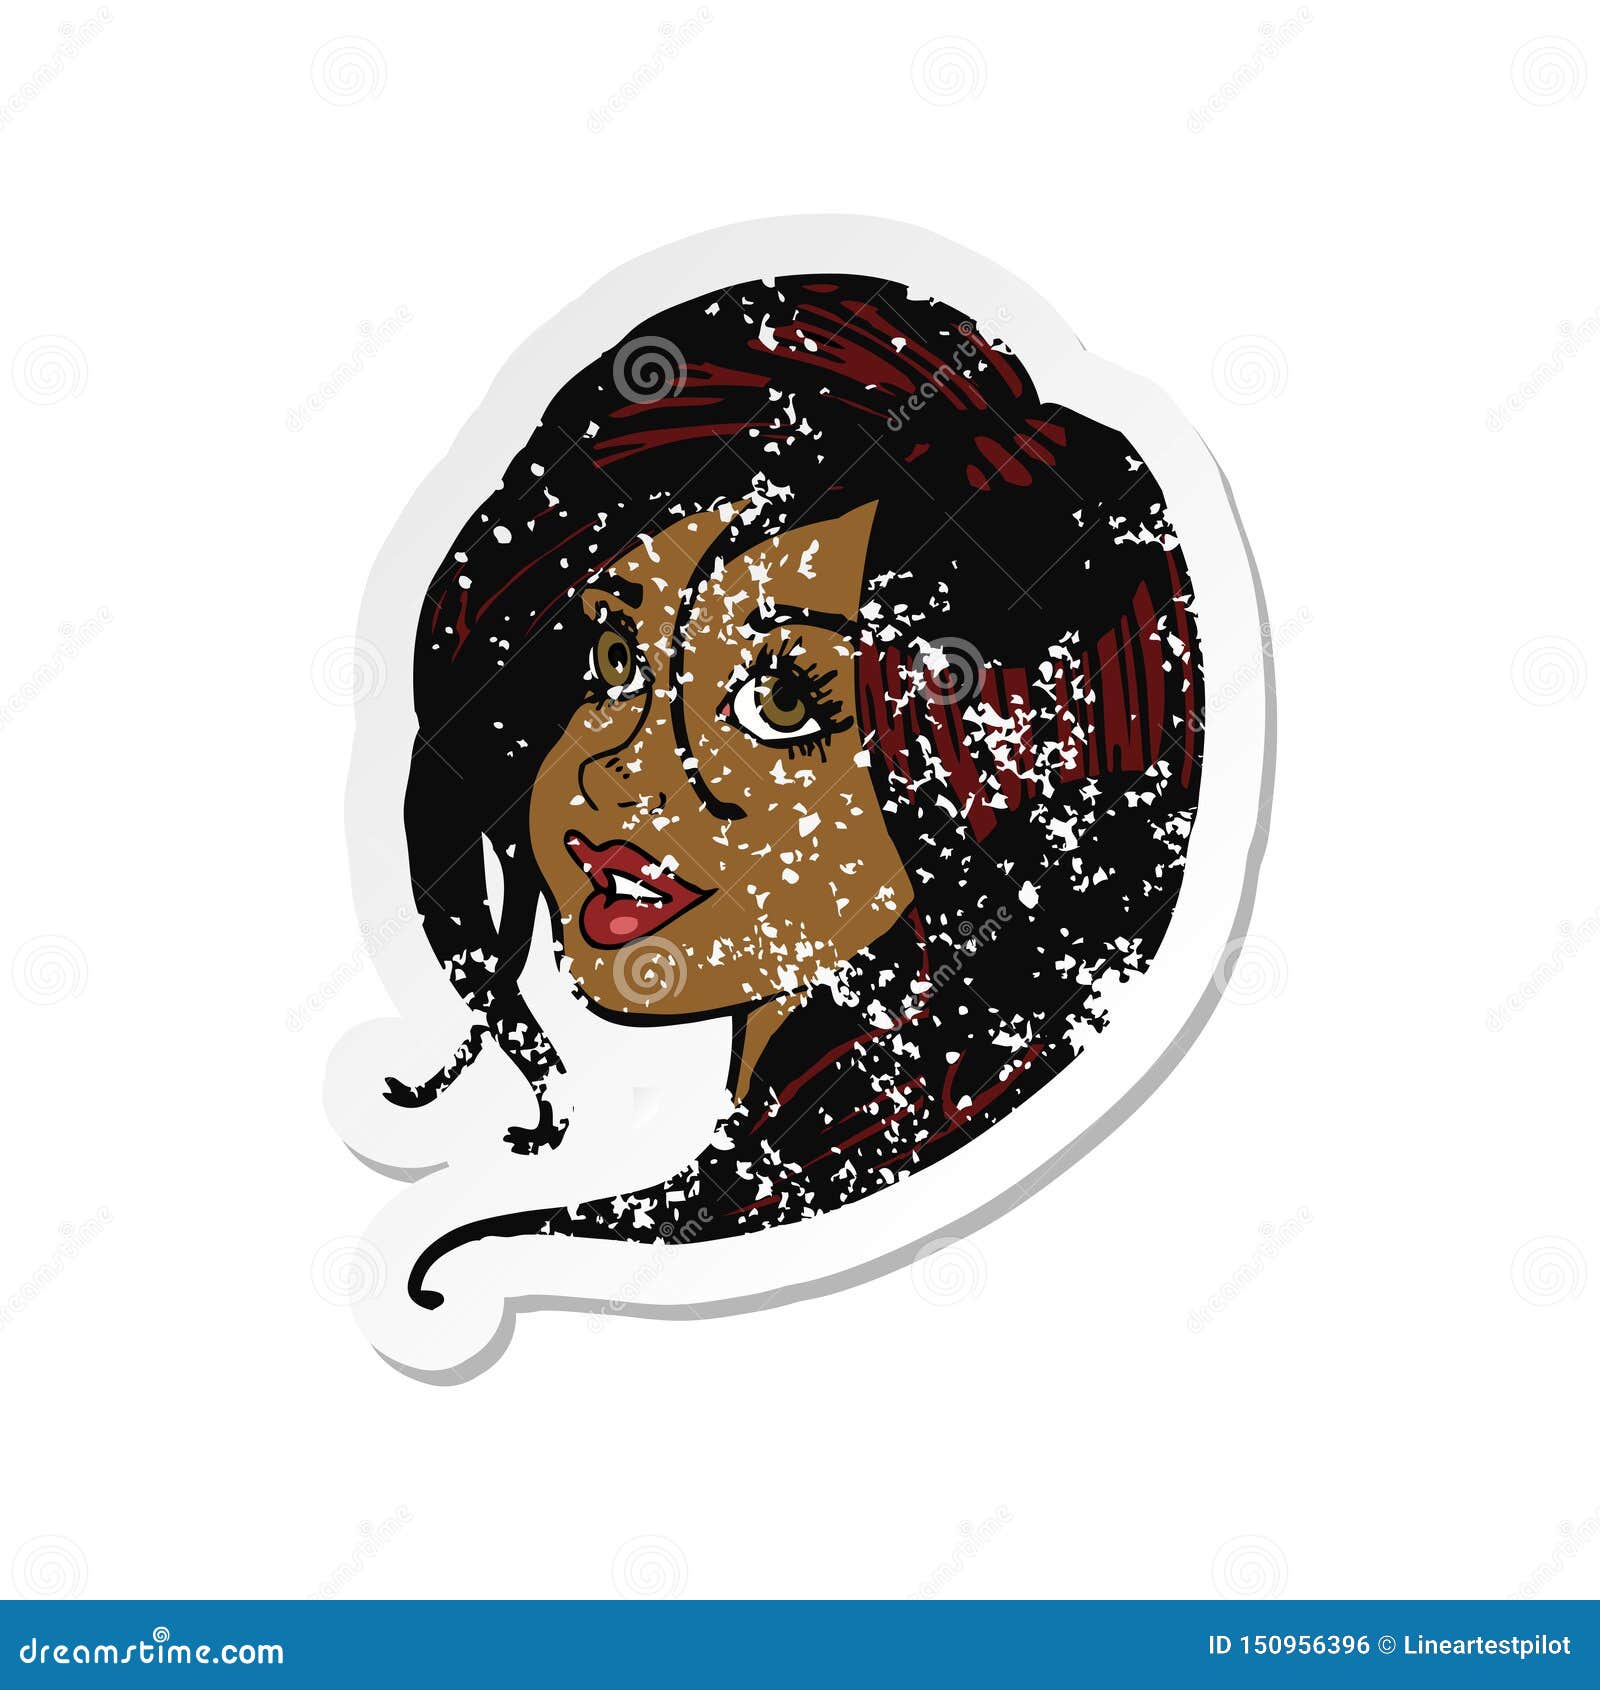 A Creative Retro Distressed Sticker Of A Cartoon Pretty Female Face Stock Vector Illustration